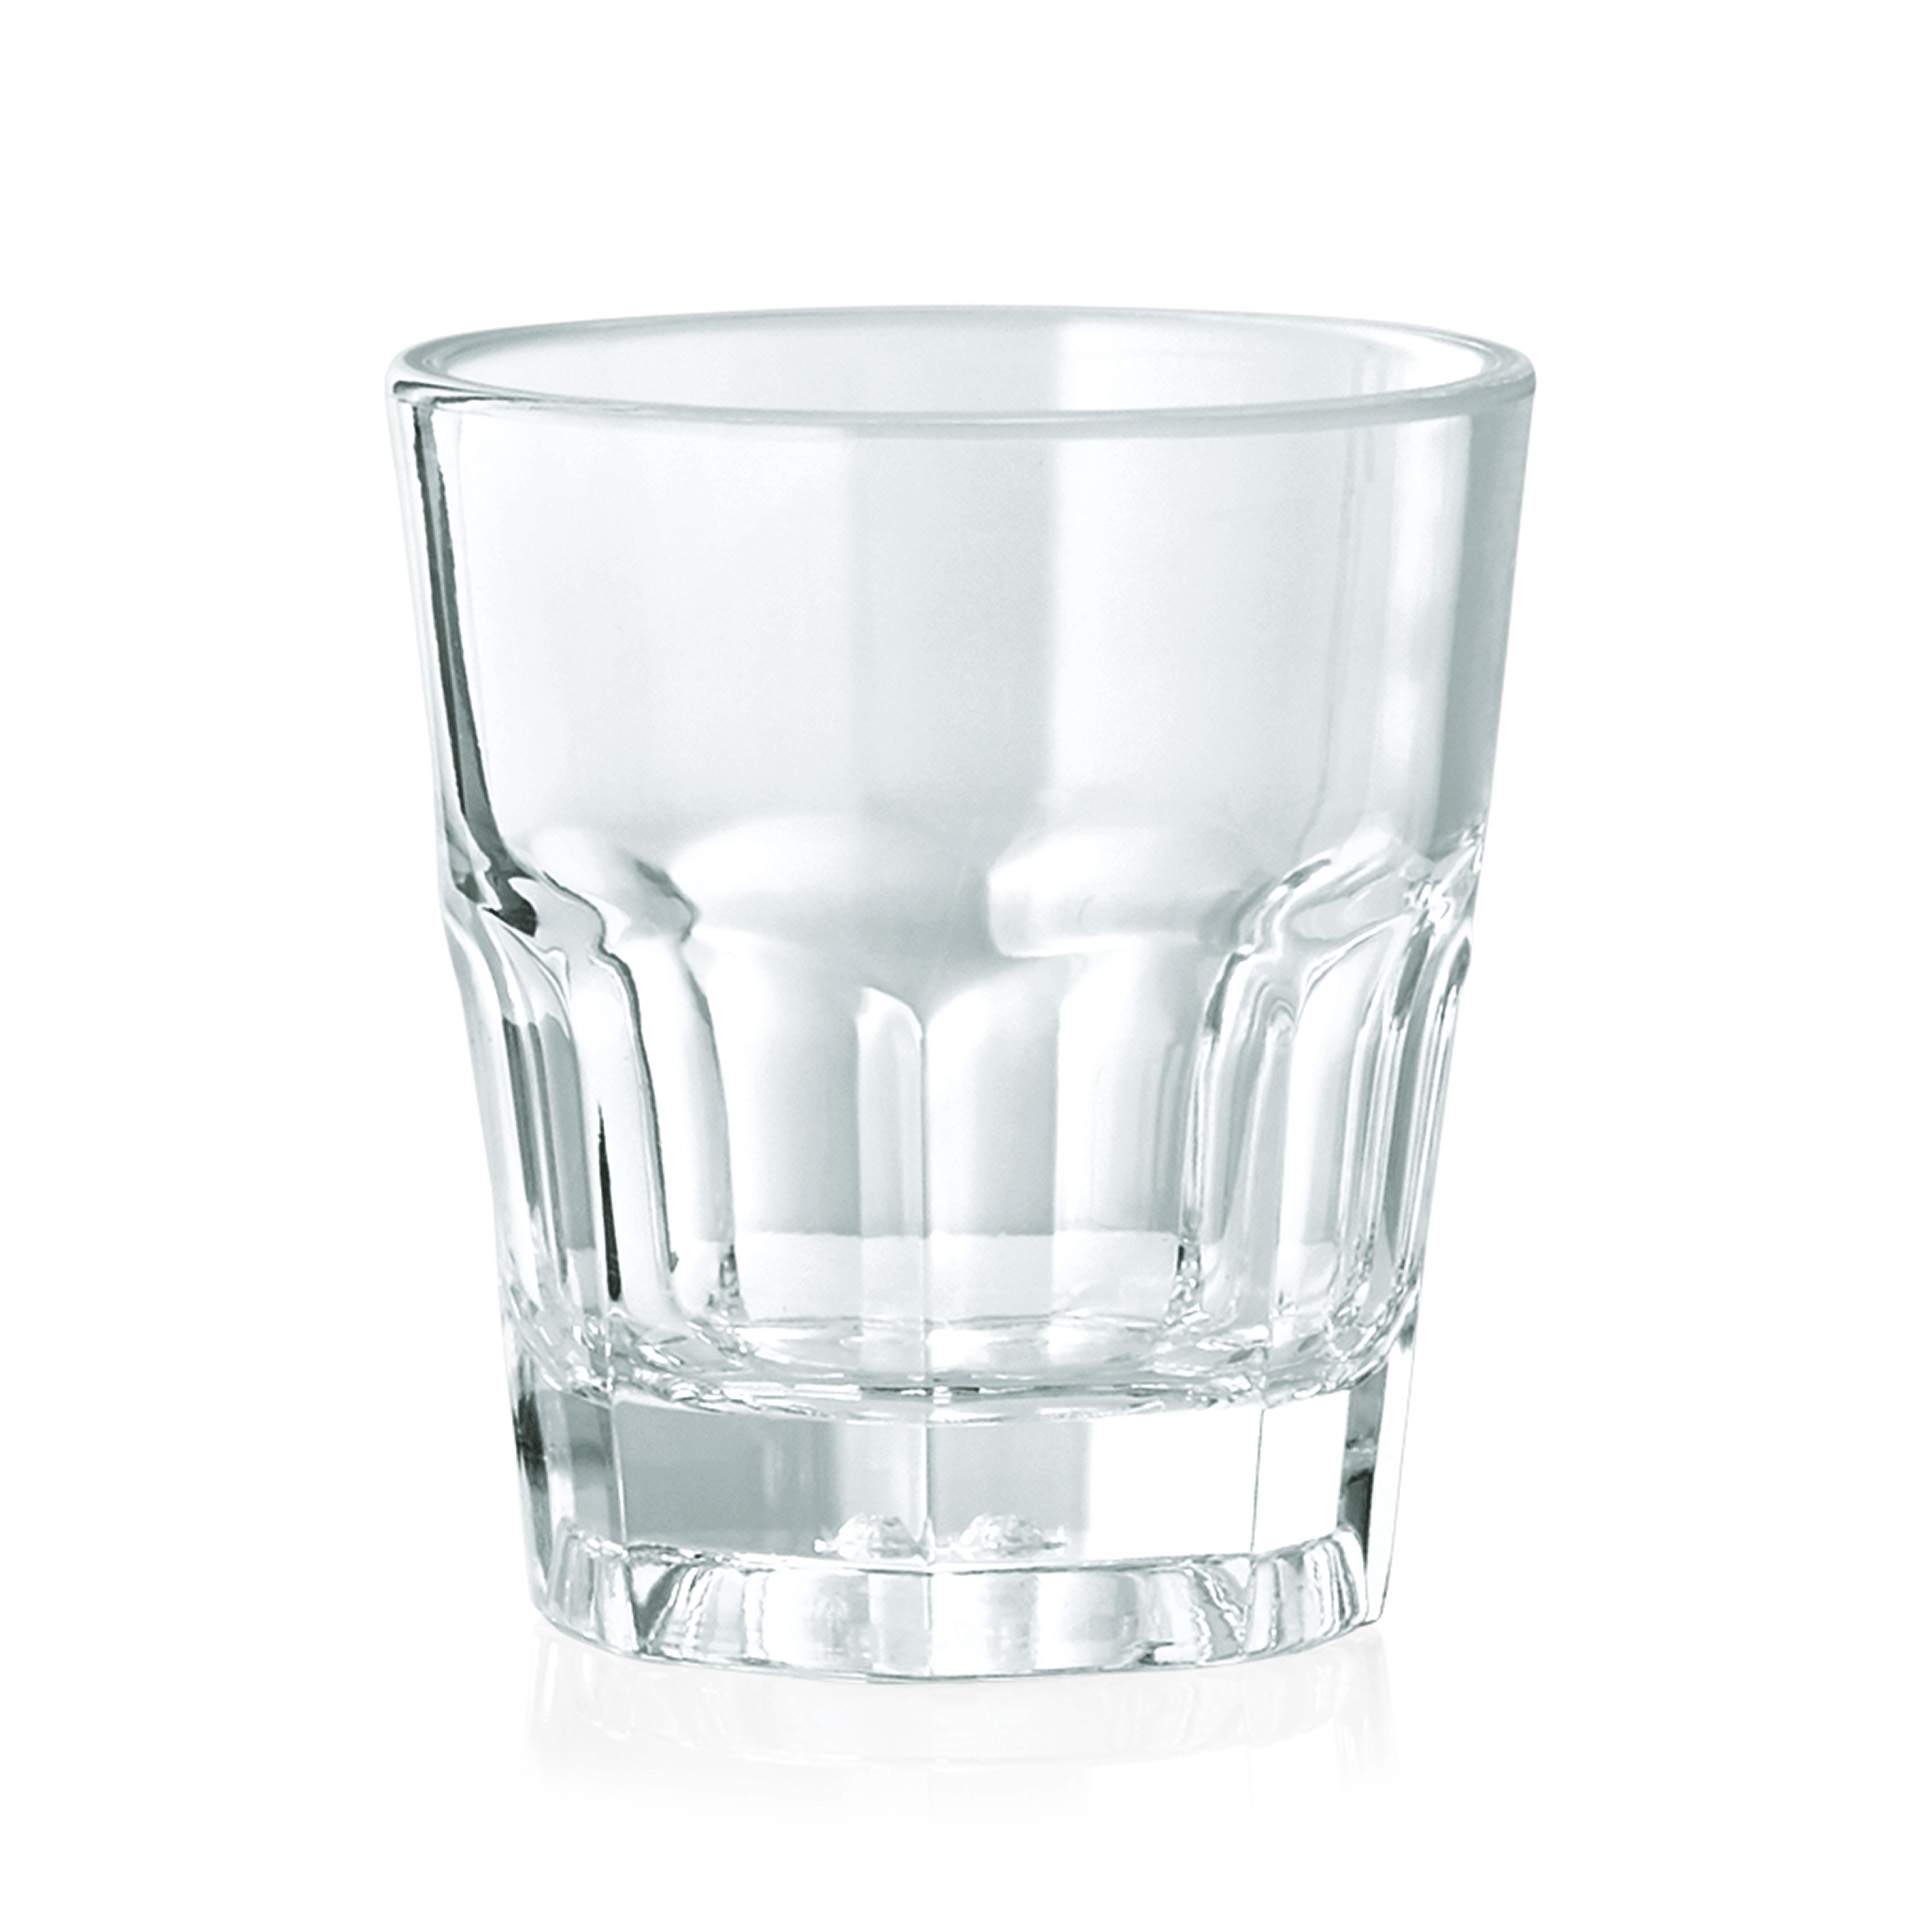 Schnapsglas - Serie Pool - Abm. 4,9 cm - Ø oben / unten 4,3 / 3,2 cm - Inhalt 0,03 l - Polycarbonat - premium Qualität - 9450003-A